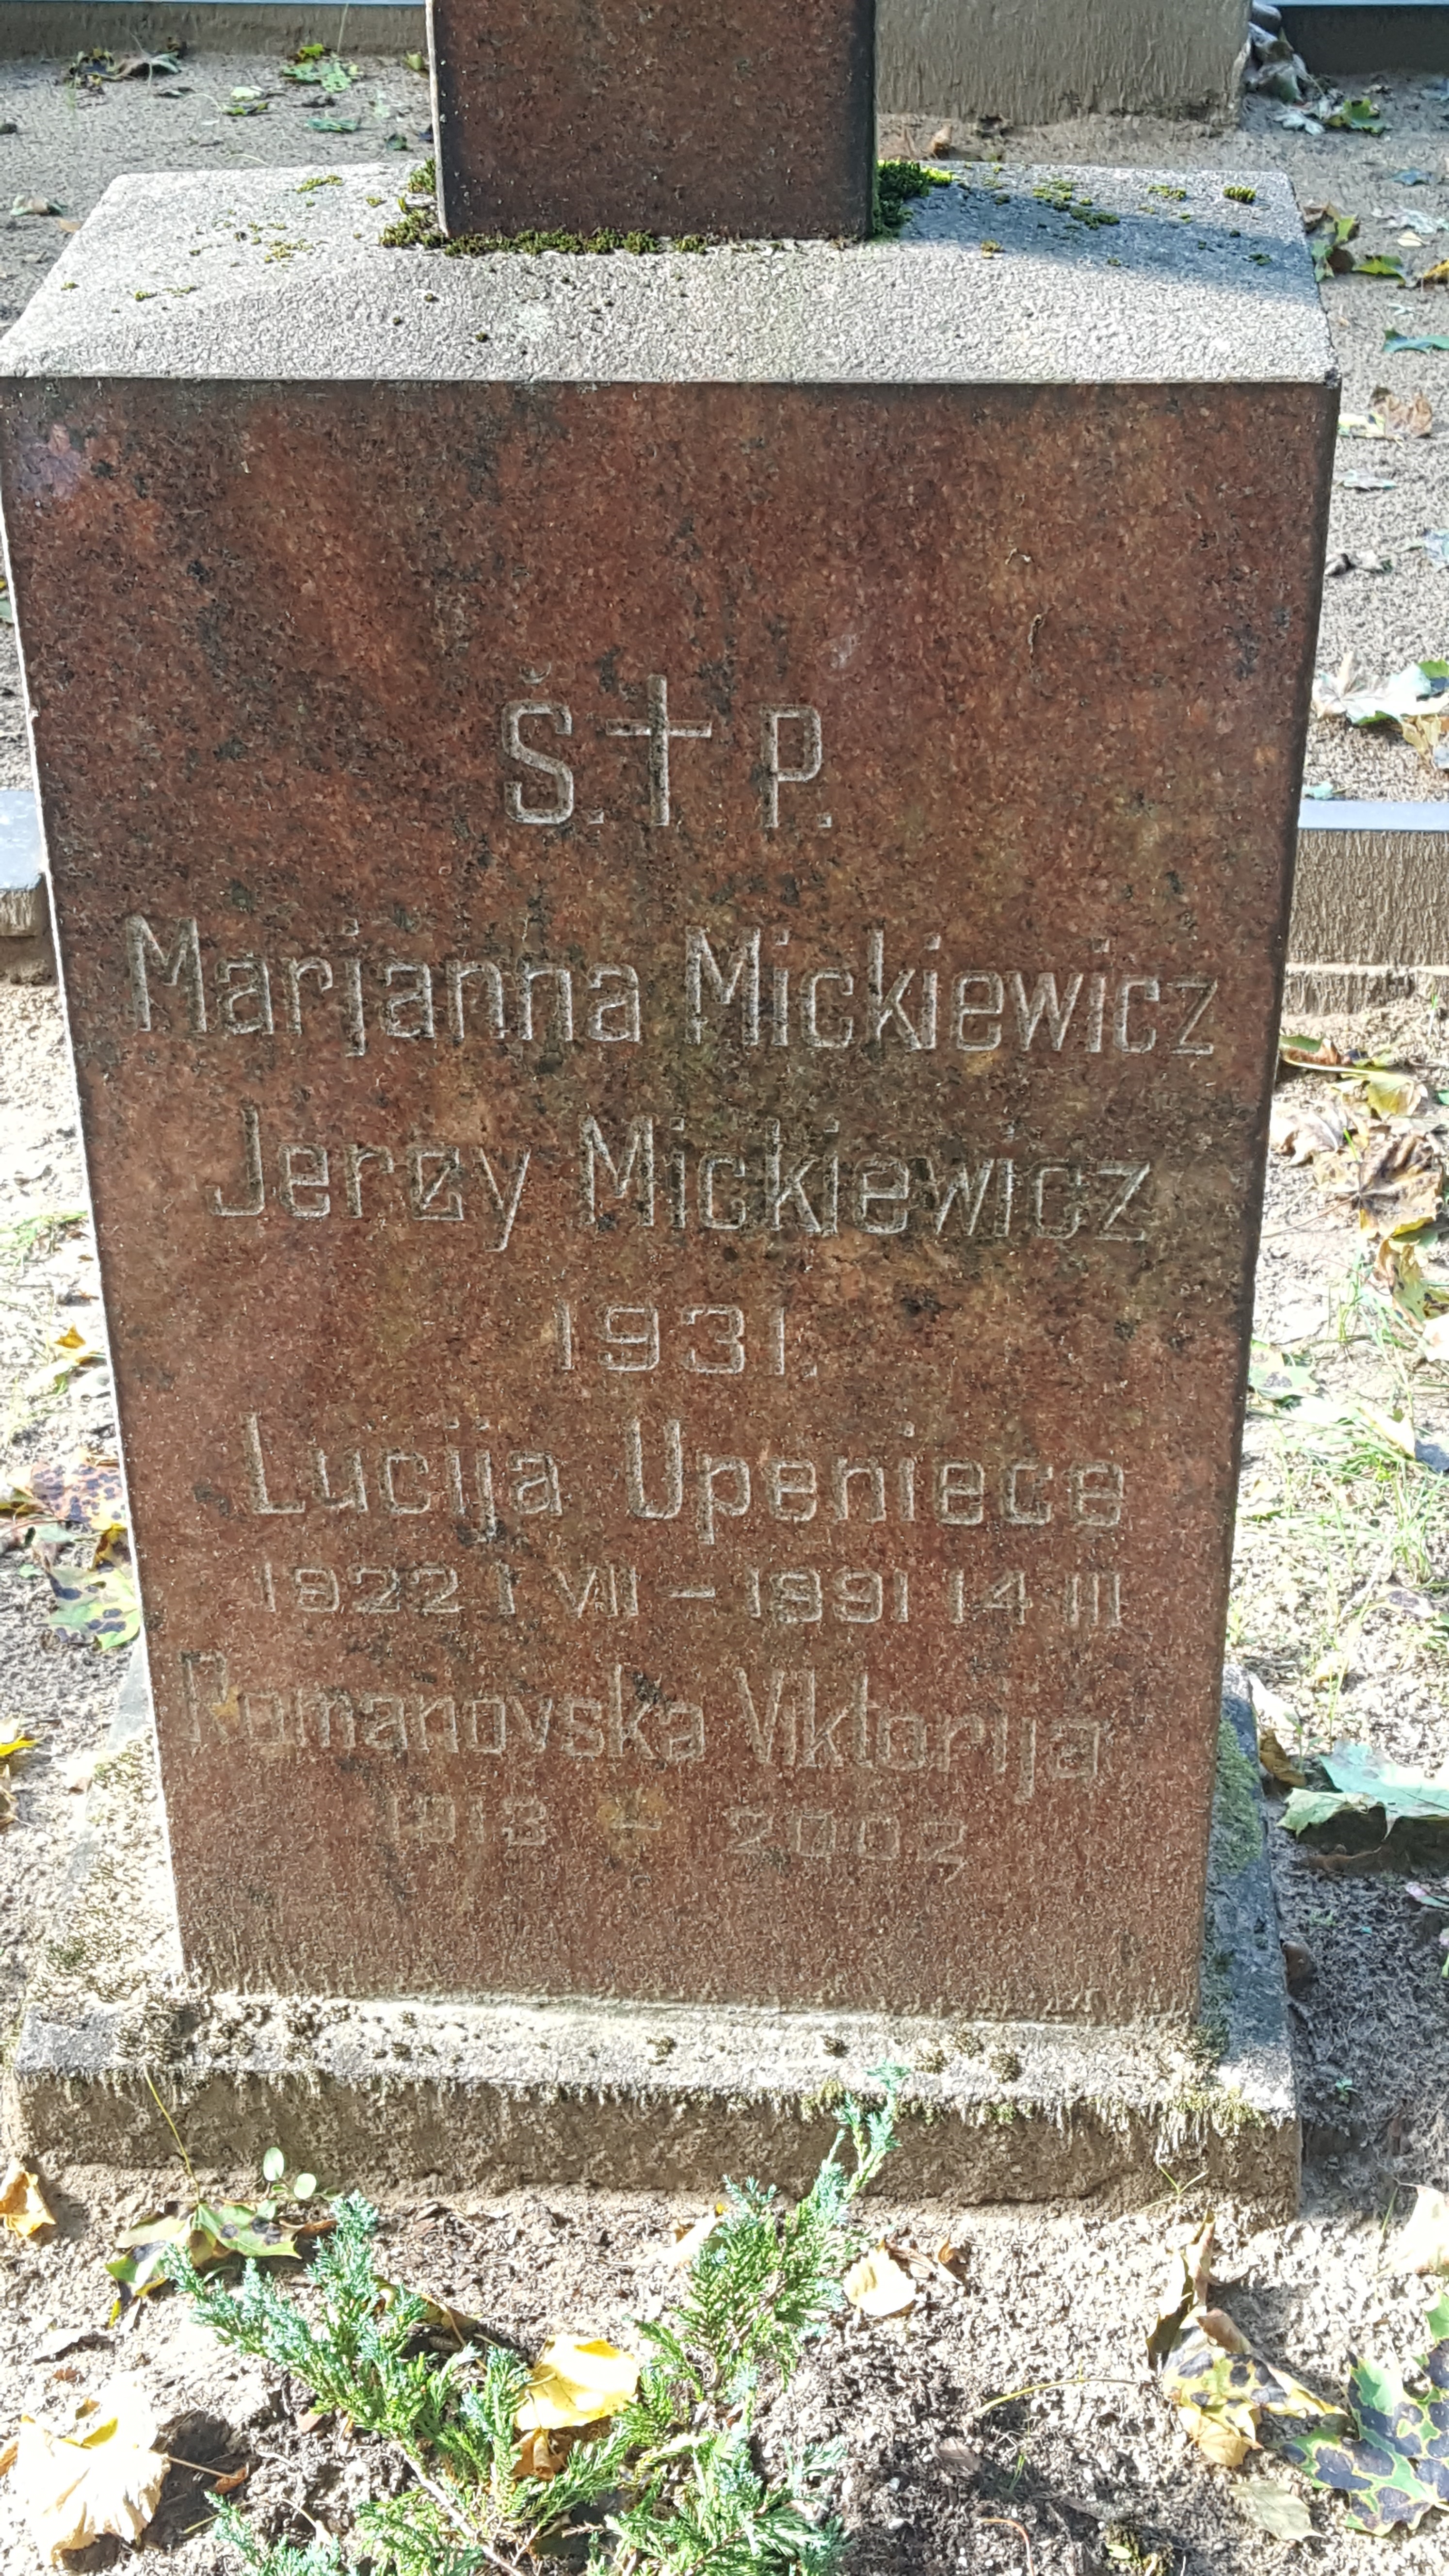 Napis z nagrobka rodziny Mickiewiczów, Viktorii Romanovskiej, Lucii Upenieca, cmentarz św. Michała w Rydze, stan z 2021 r